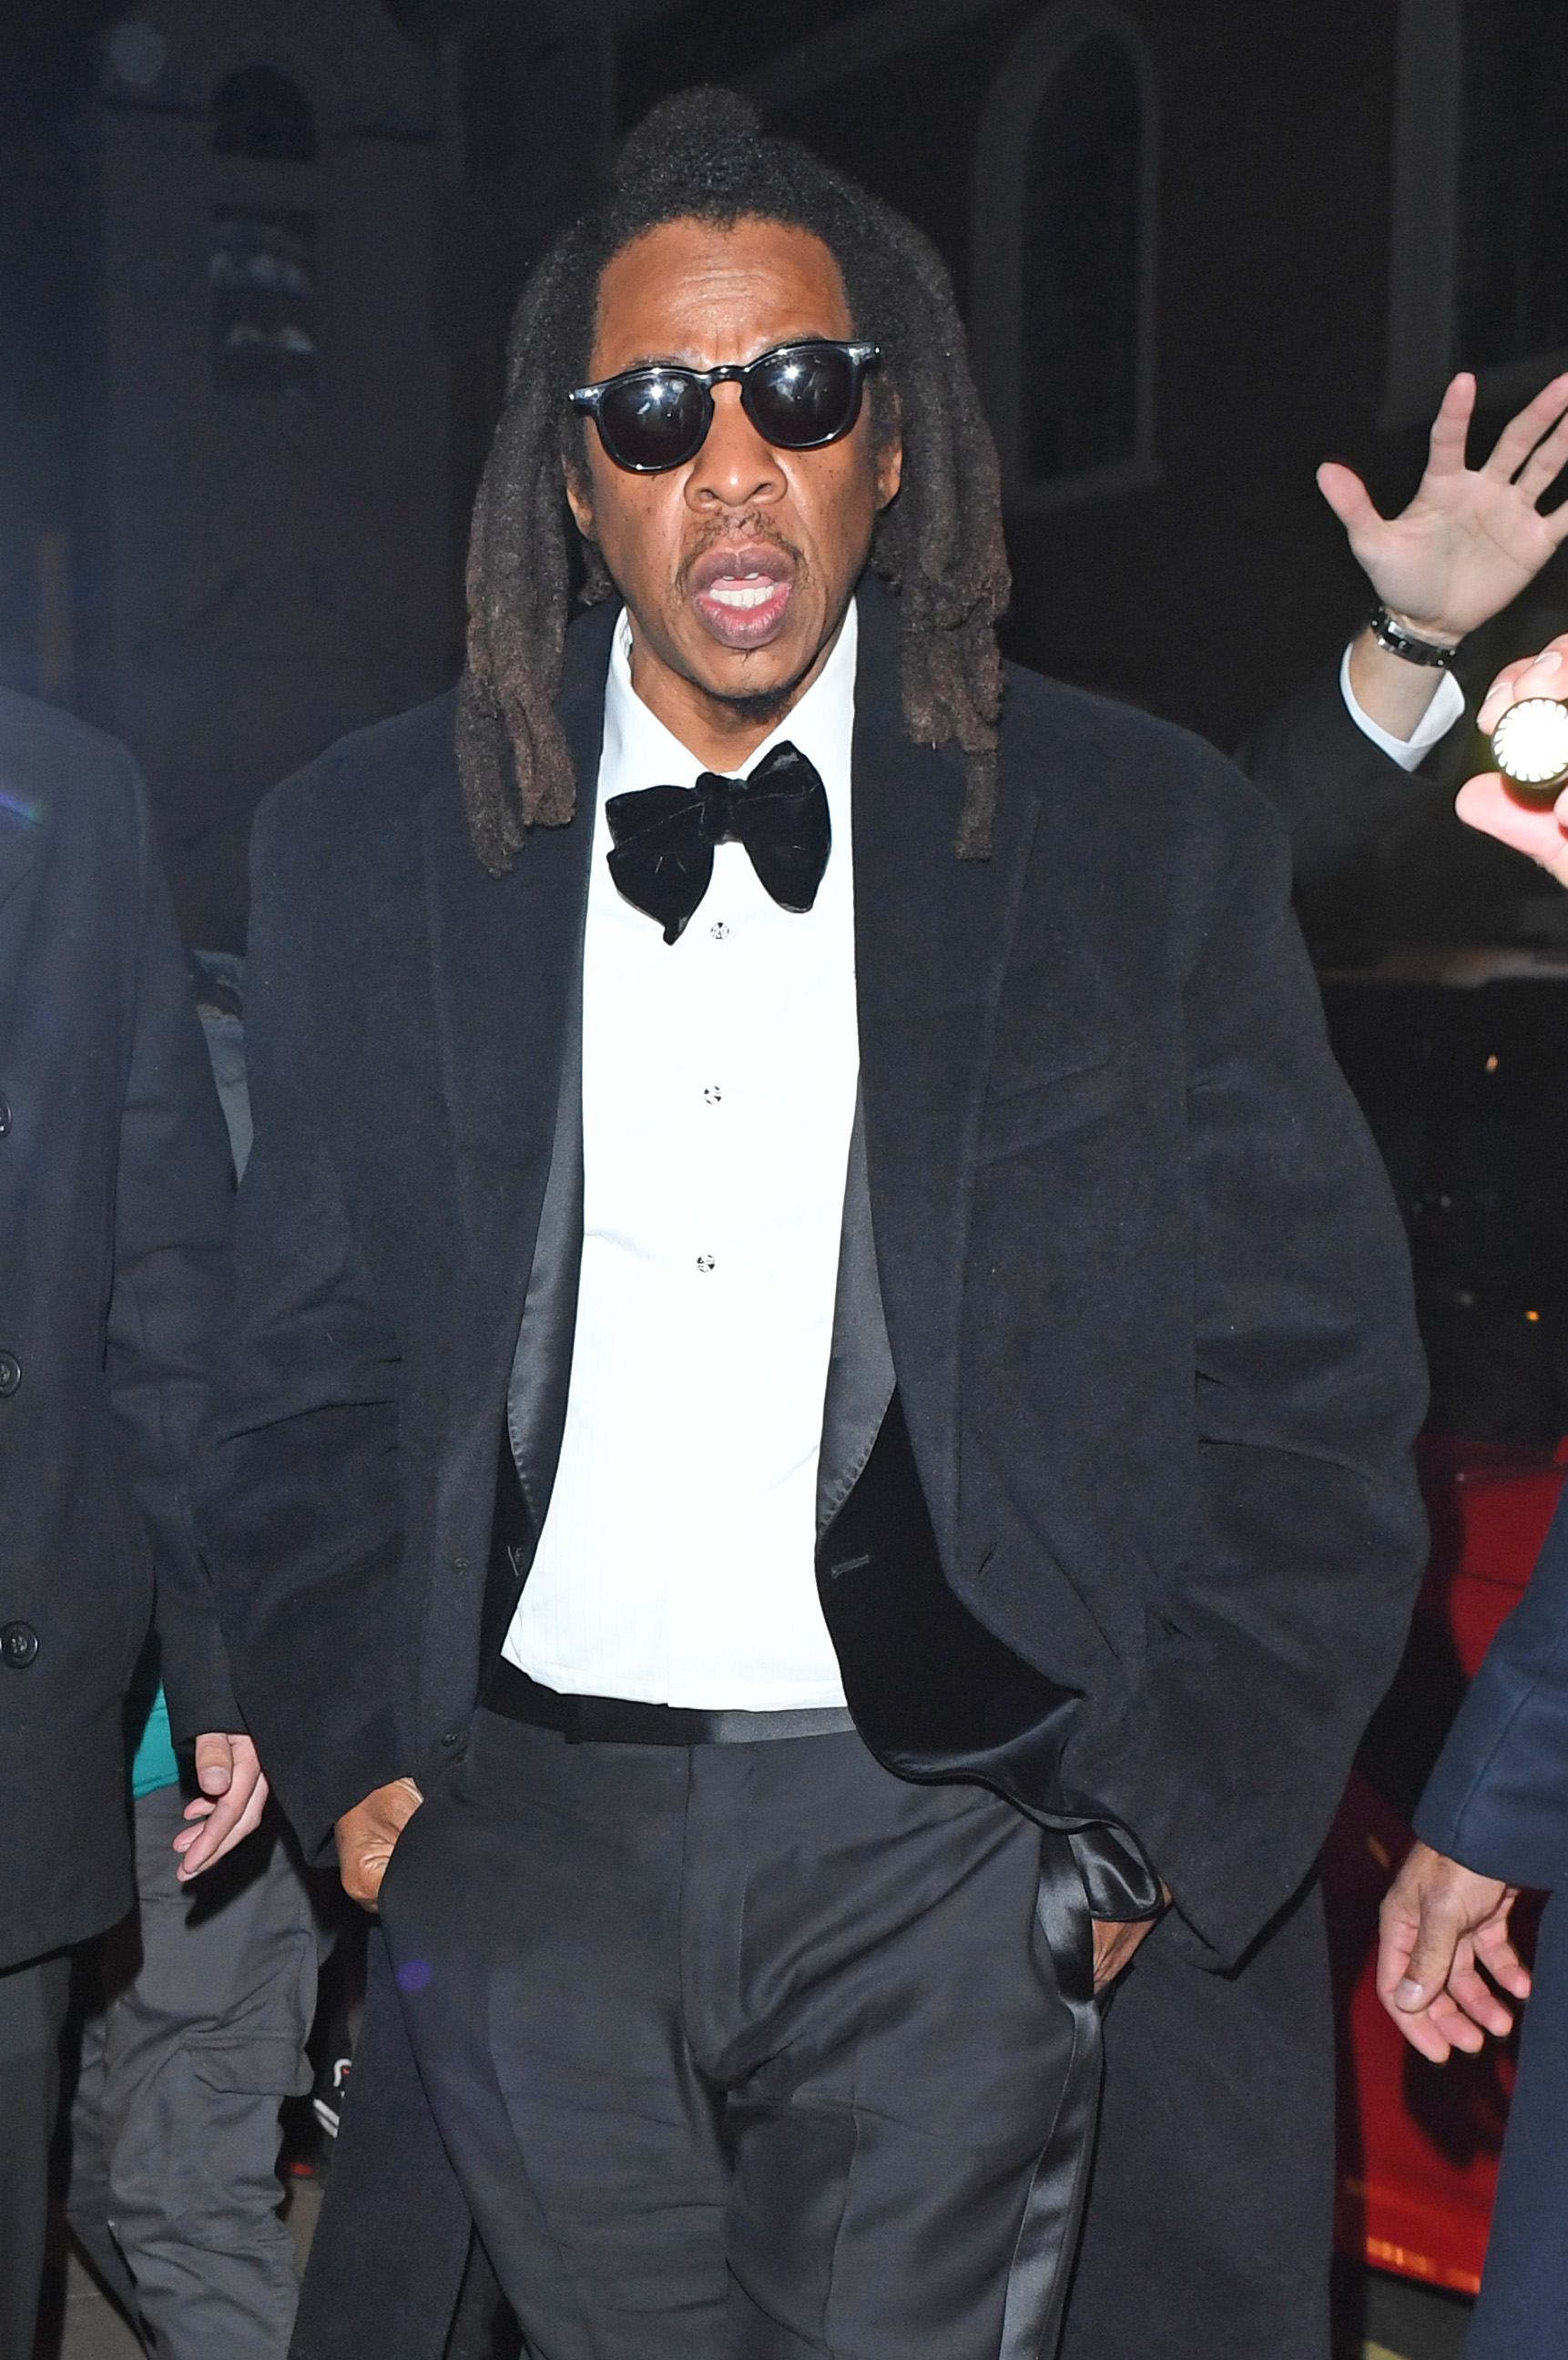 Auch der Ehemann des Stars, Jay-Z, war anwesend